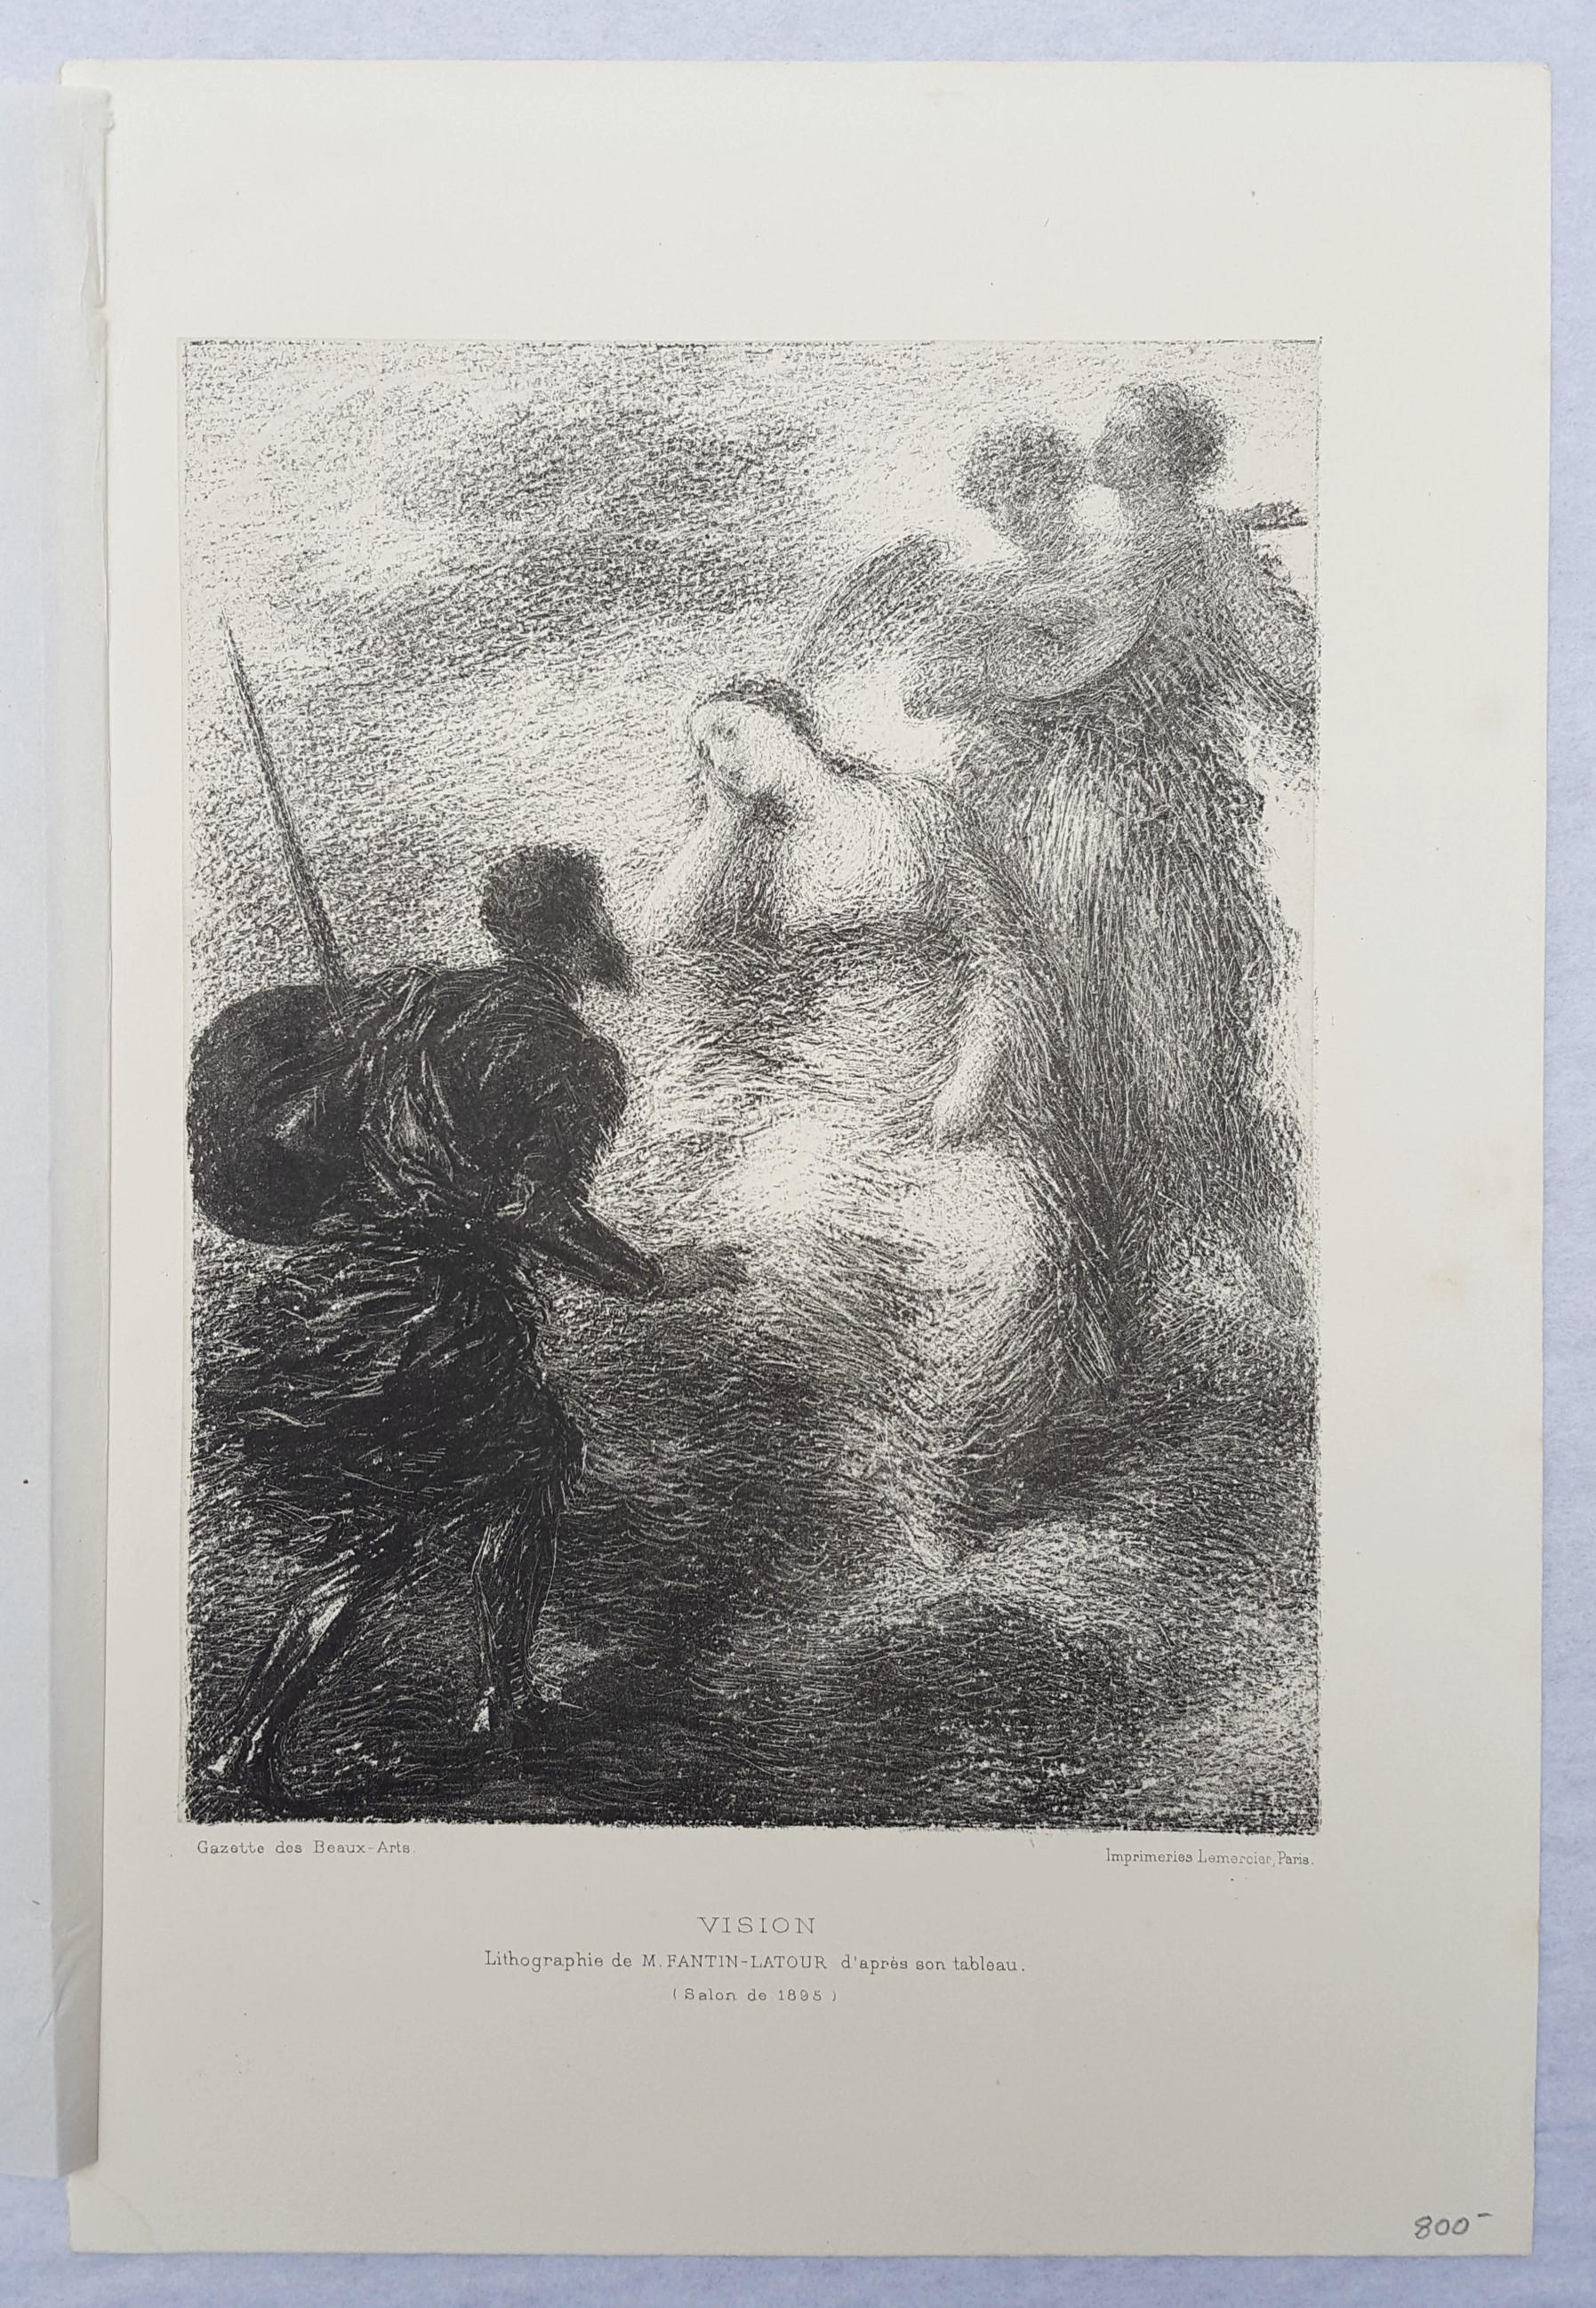 Vision /// Français Romantique Classique Figurative Dame Femme Soldat Ange Litho - Impressionnisme Print par Henri Fantin-Latour